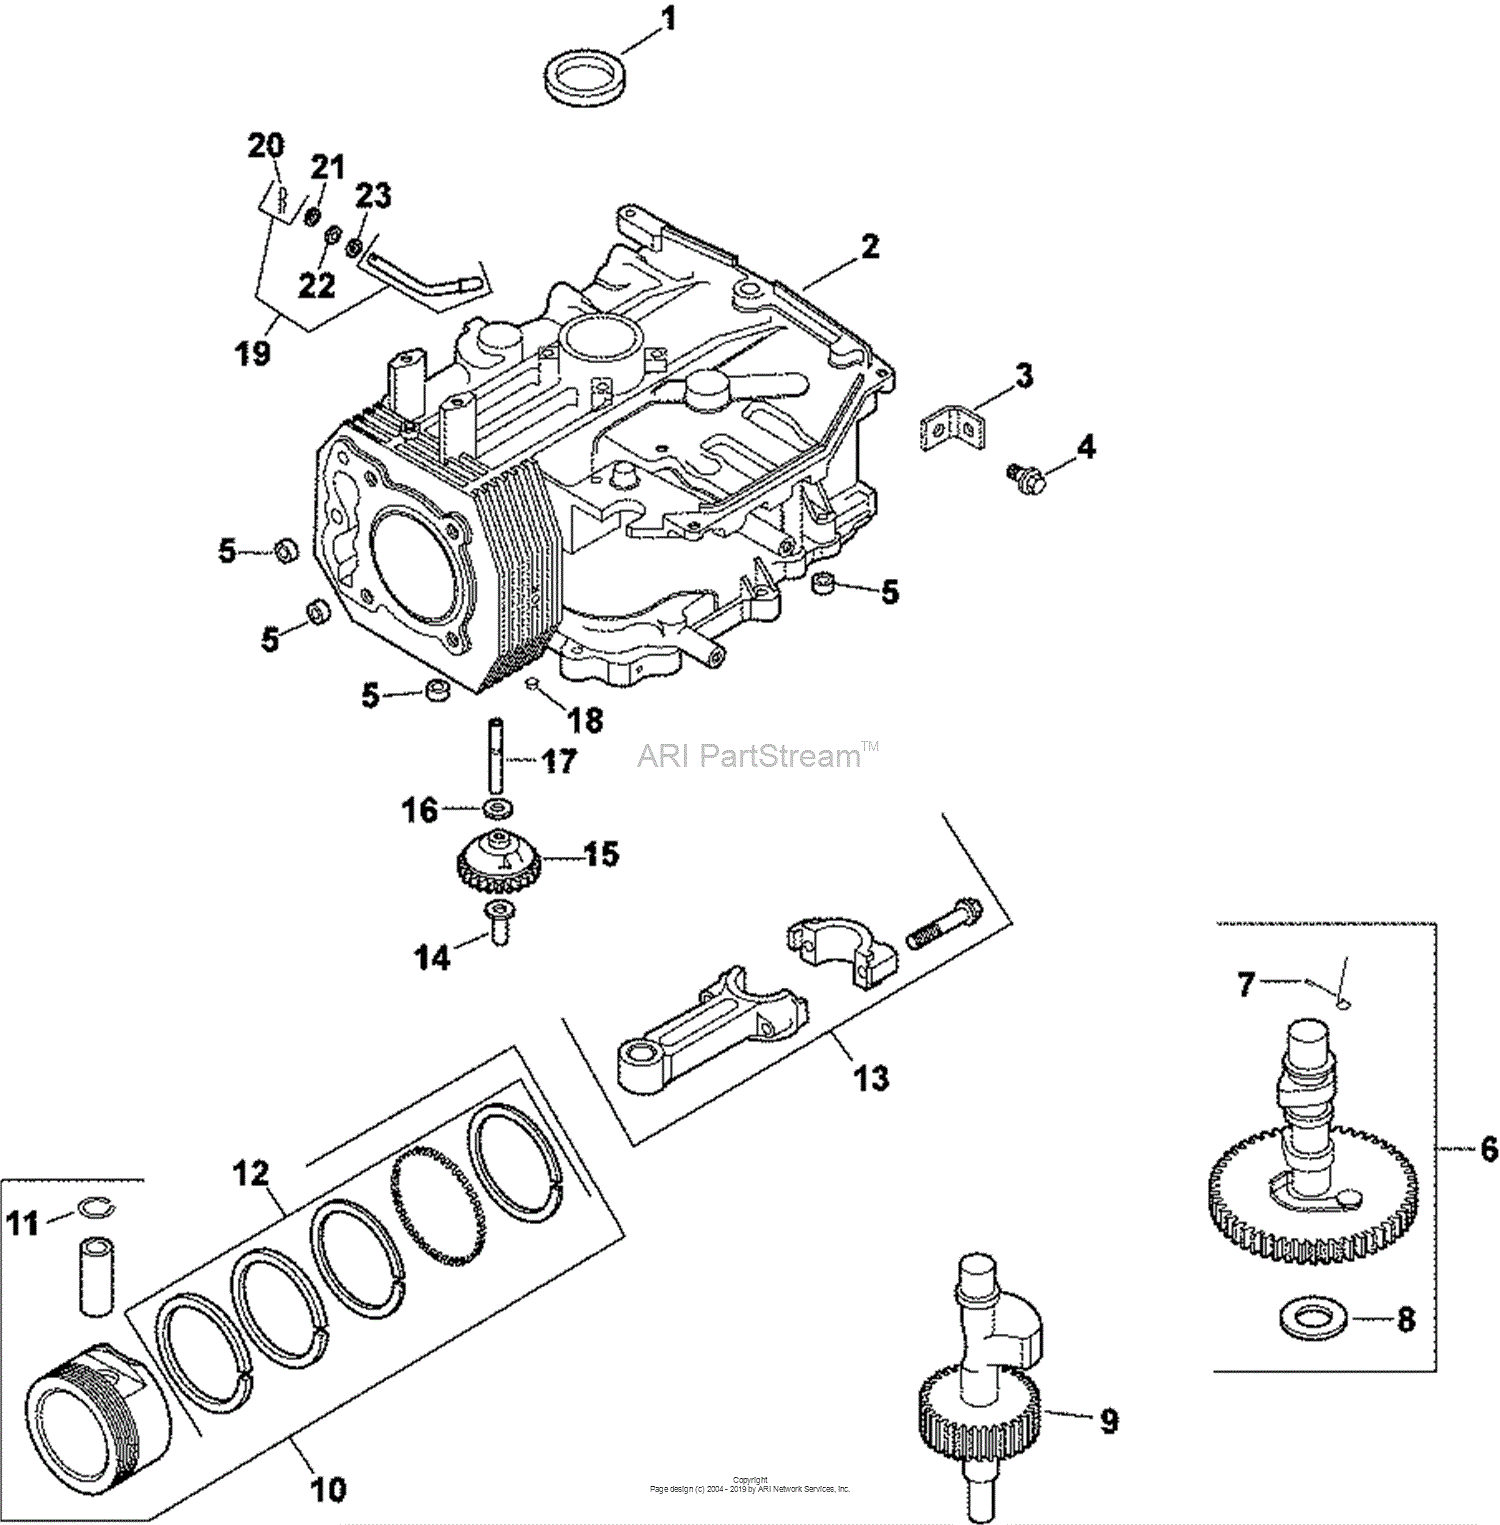 Kohler CV14-14107 SIMPLICITY 14 HP Parts Diagram for Crankcase 2-27-82